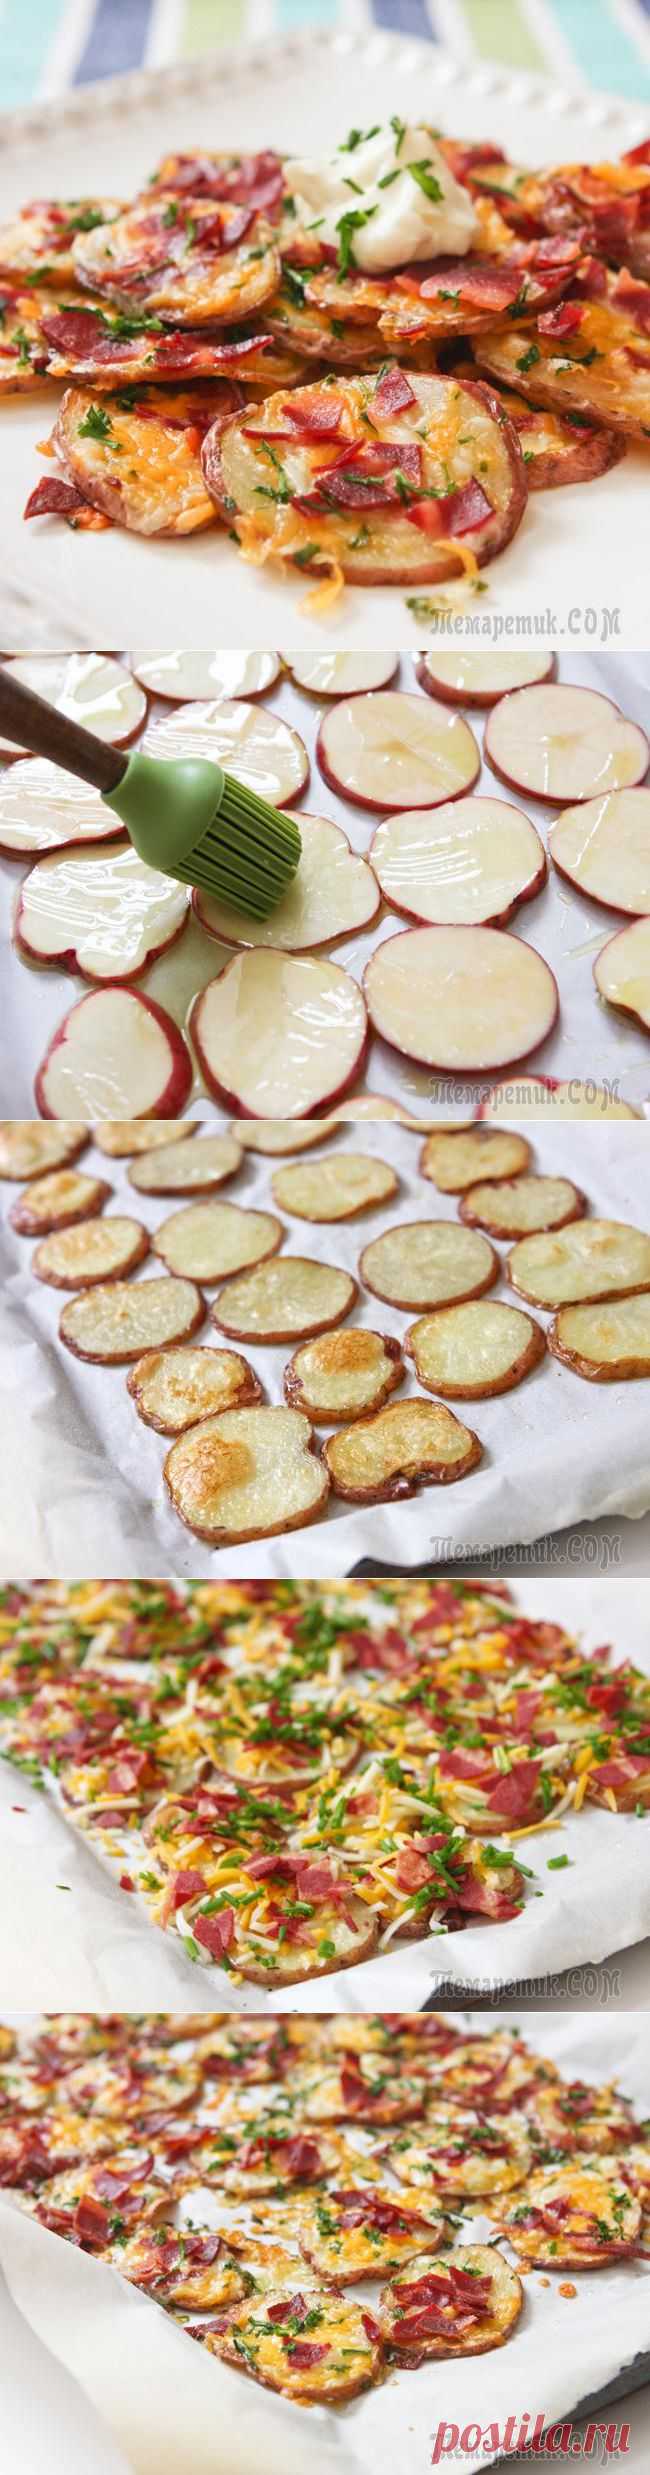 Закуска из печёного картофеля | Интересные рецепты